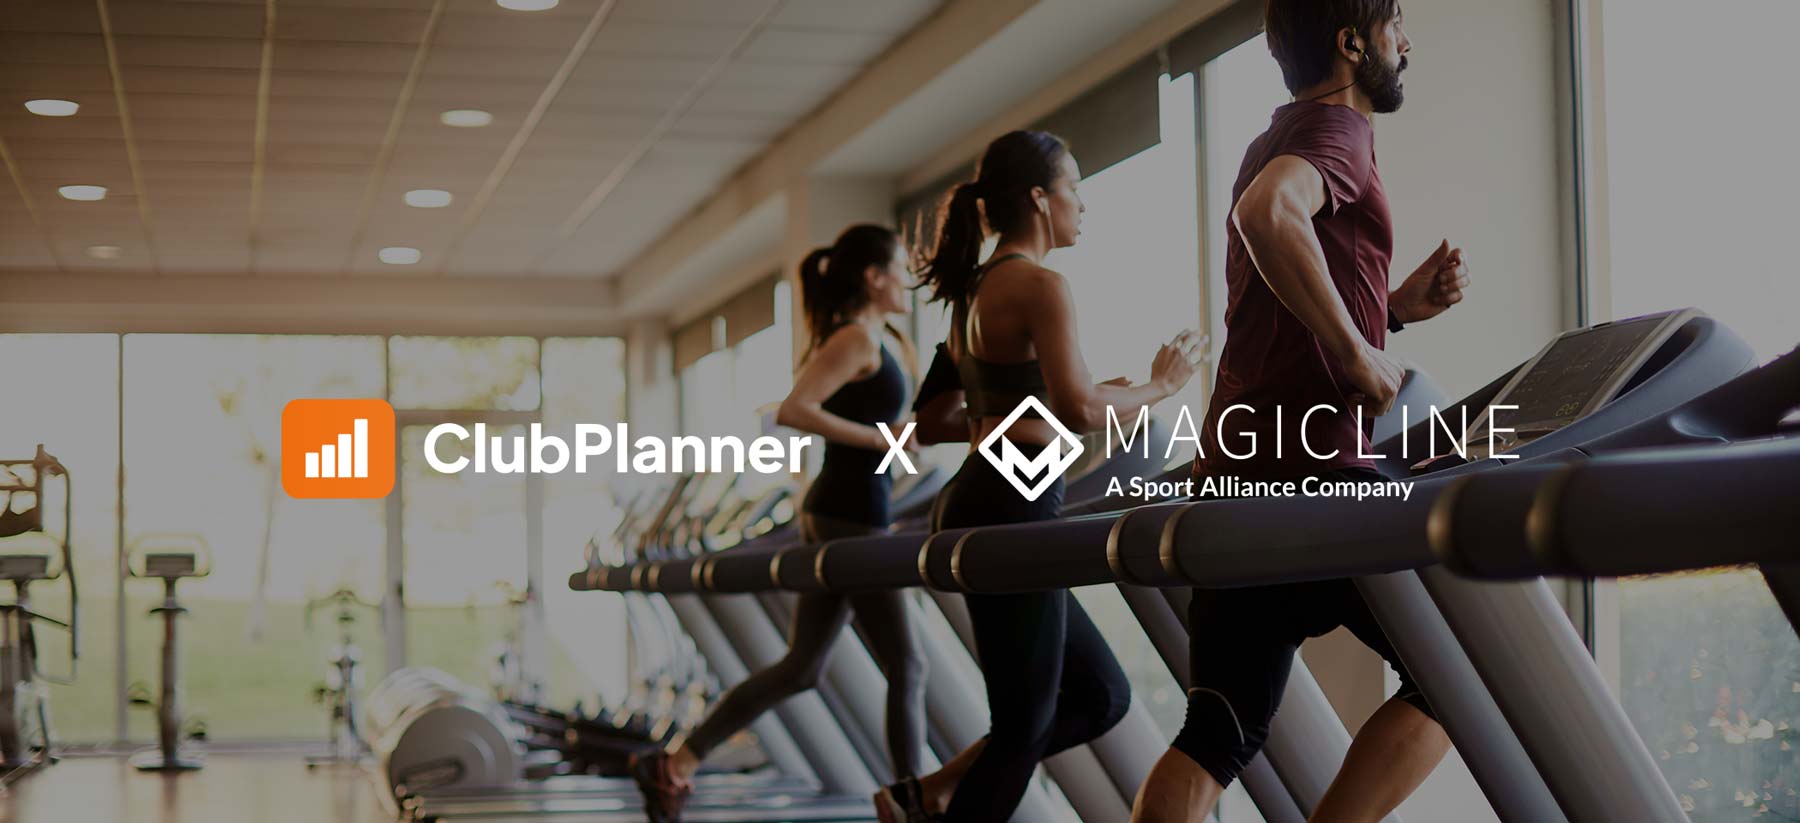 Magicline und ClubPlanner gehen strategische Kooperation ein: Kunden profitieren von nahtloser Integration